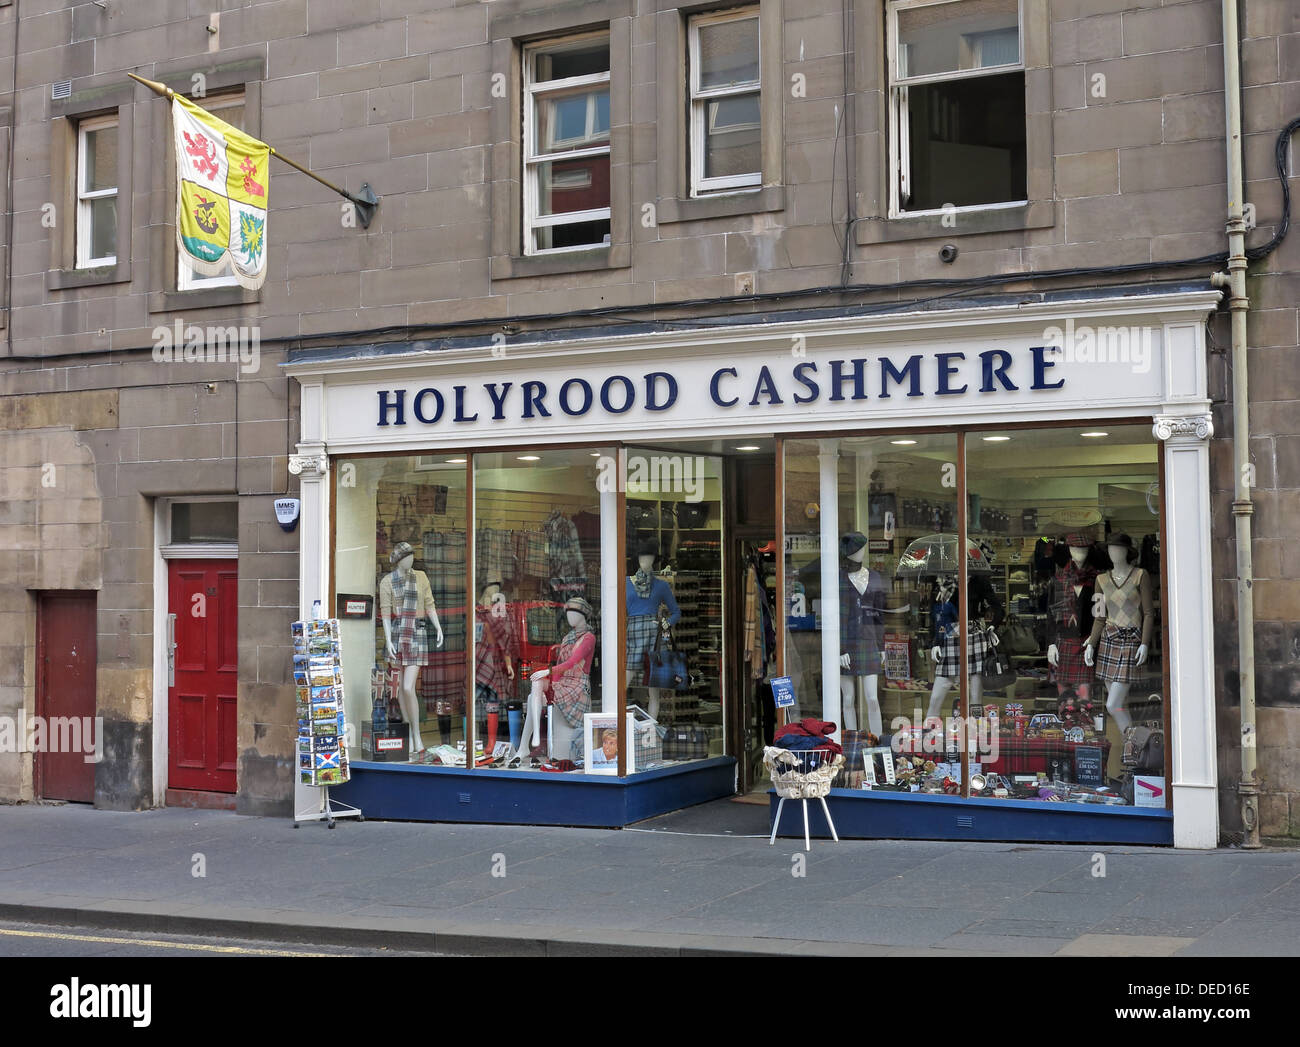 Holyrood Cashmere Shop, Flying a flag of Royal Standards, Royal Mile, Edinburgh, Schottland, Großbritannien Stockfoto